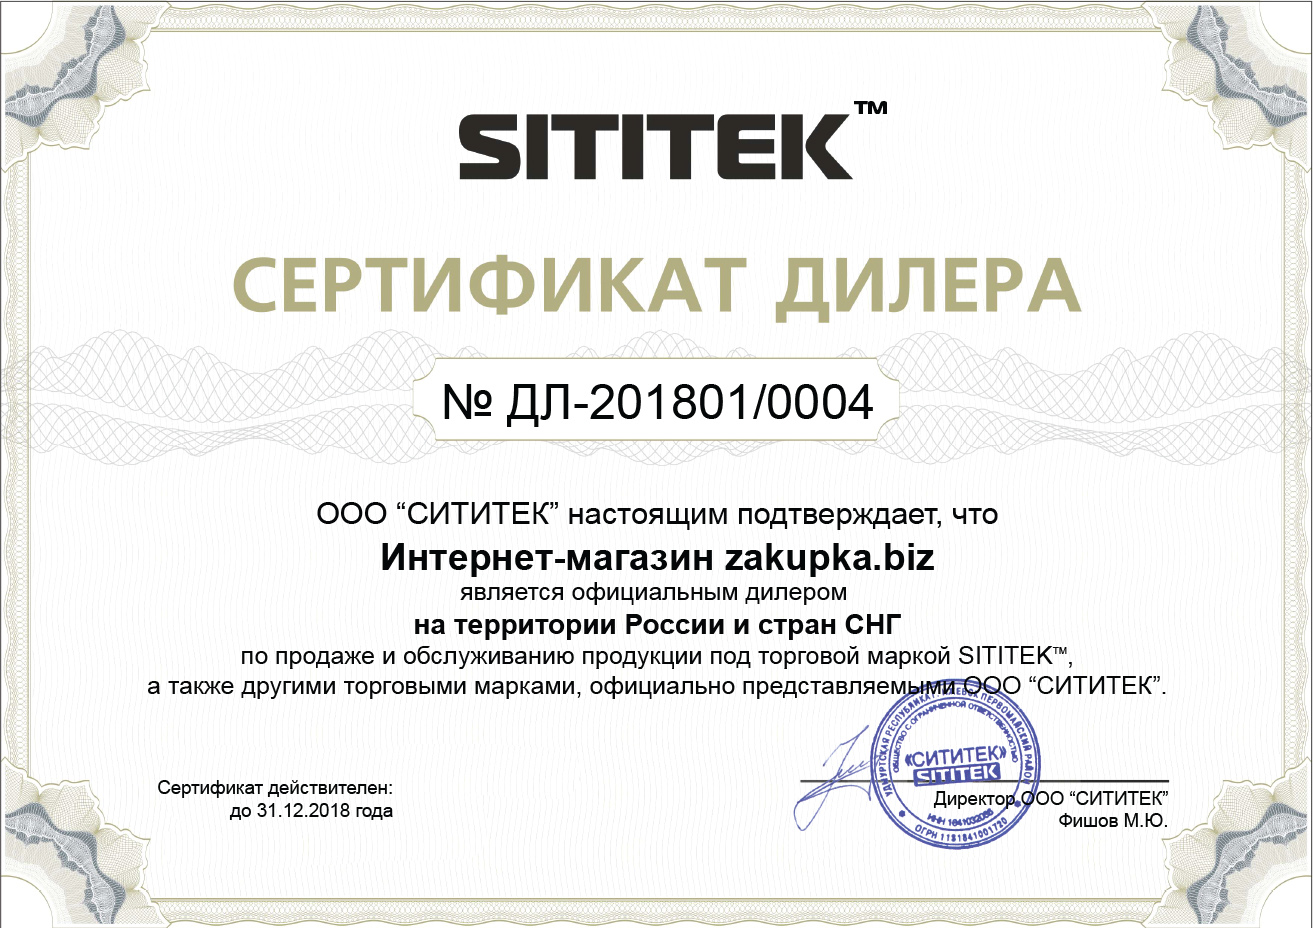 Сертификат дилера на право реализации и обслуживания продукции ТМ "Sititek", на территории России и государств СНГ